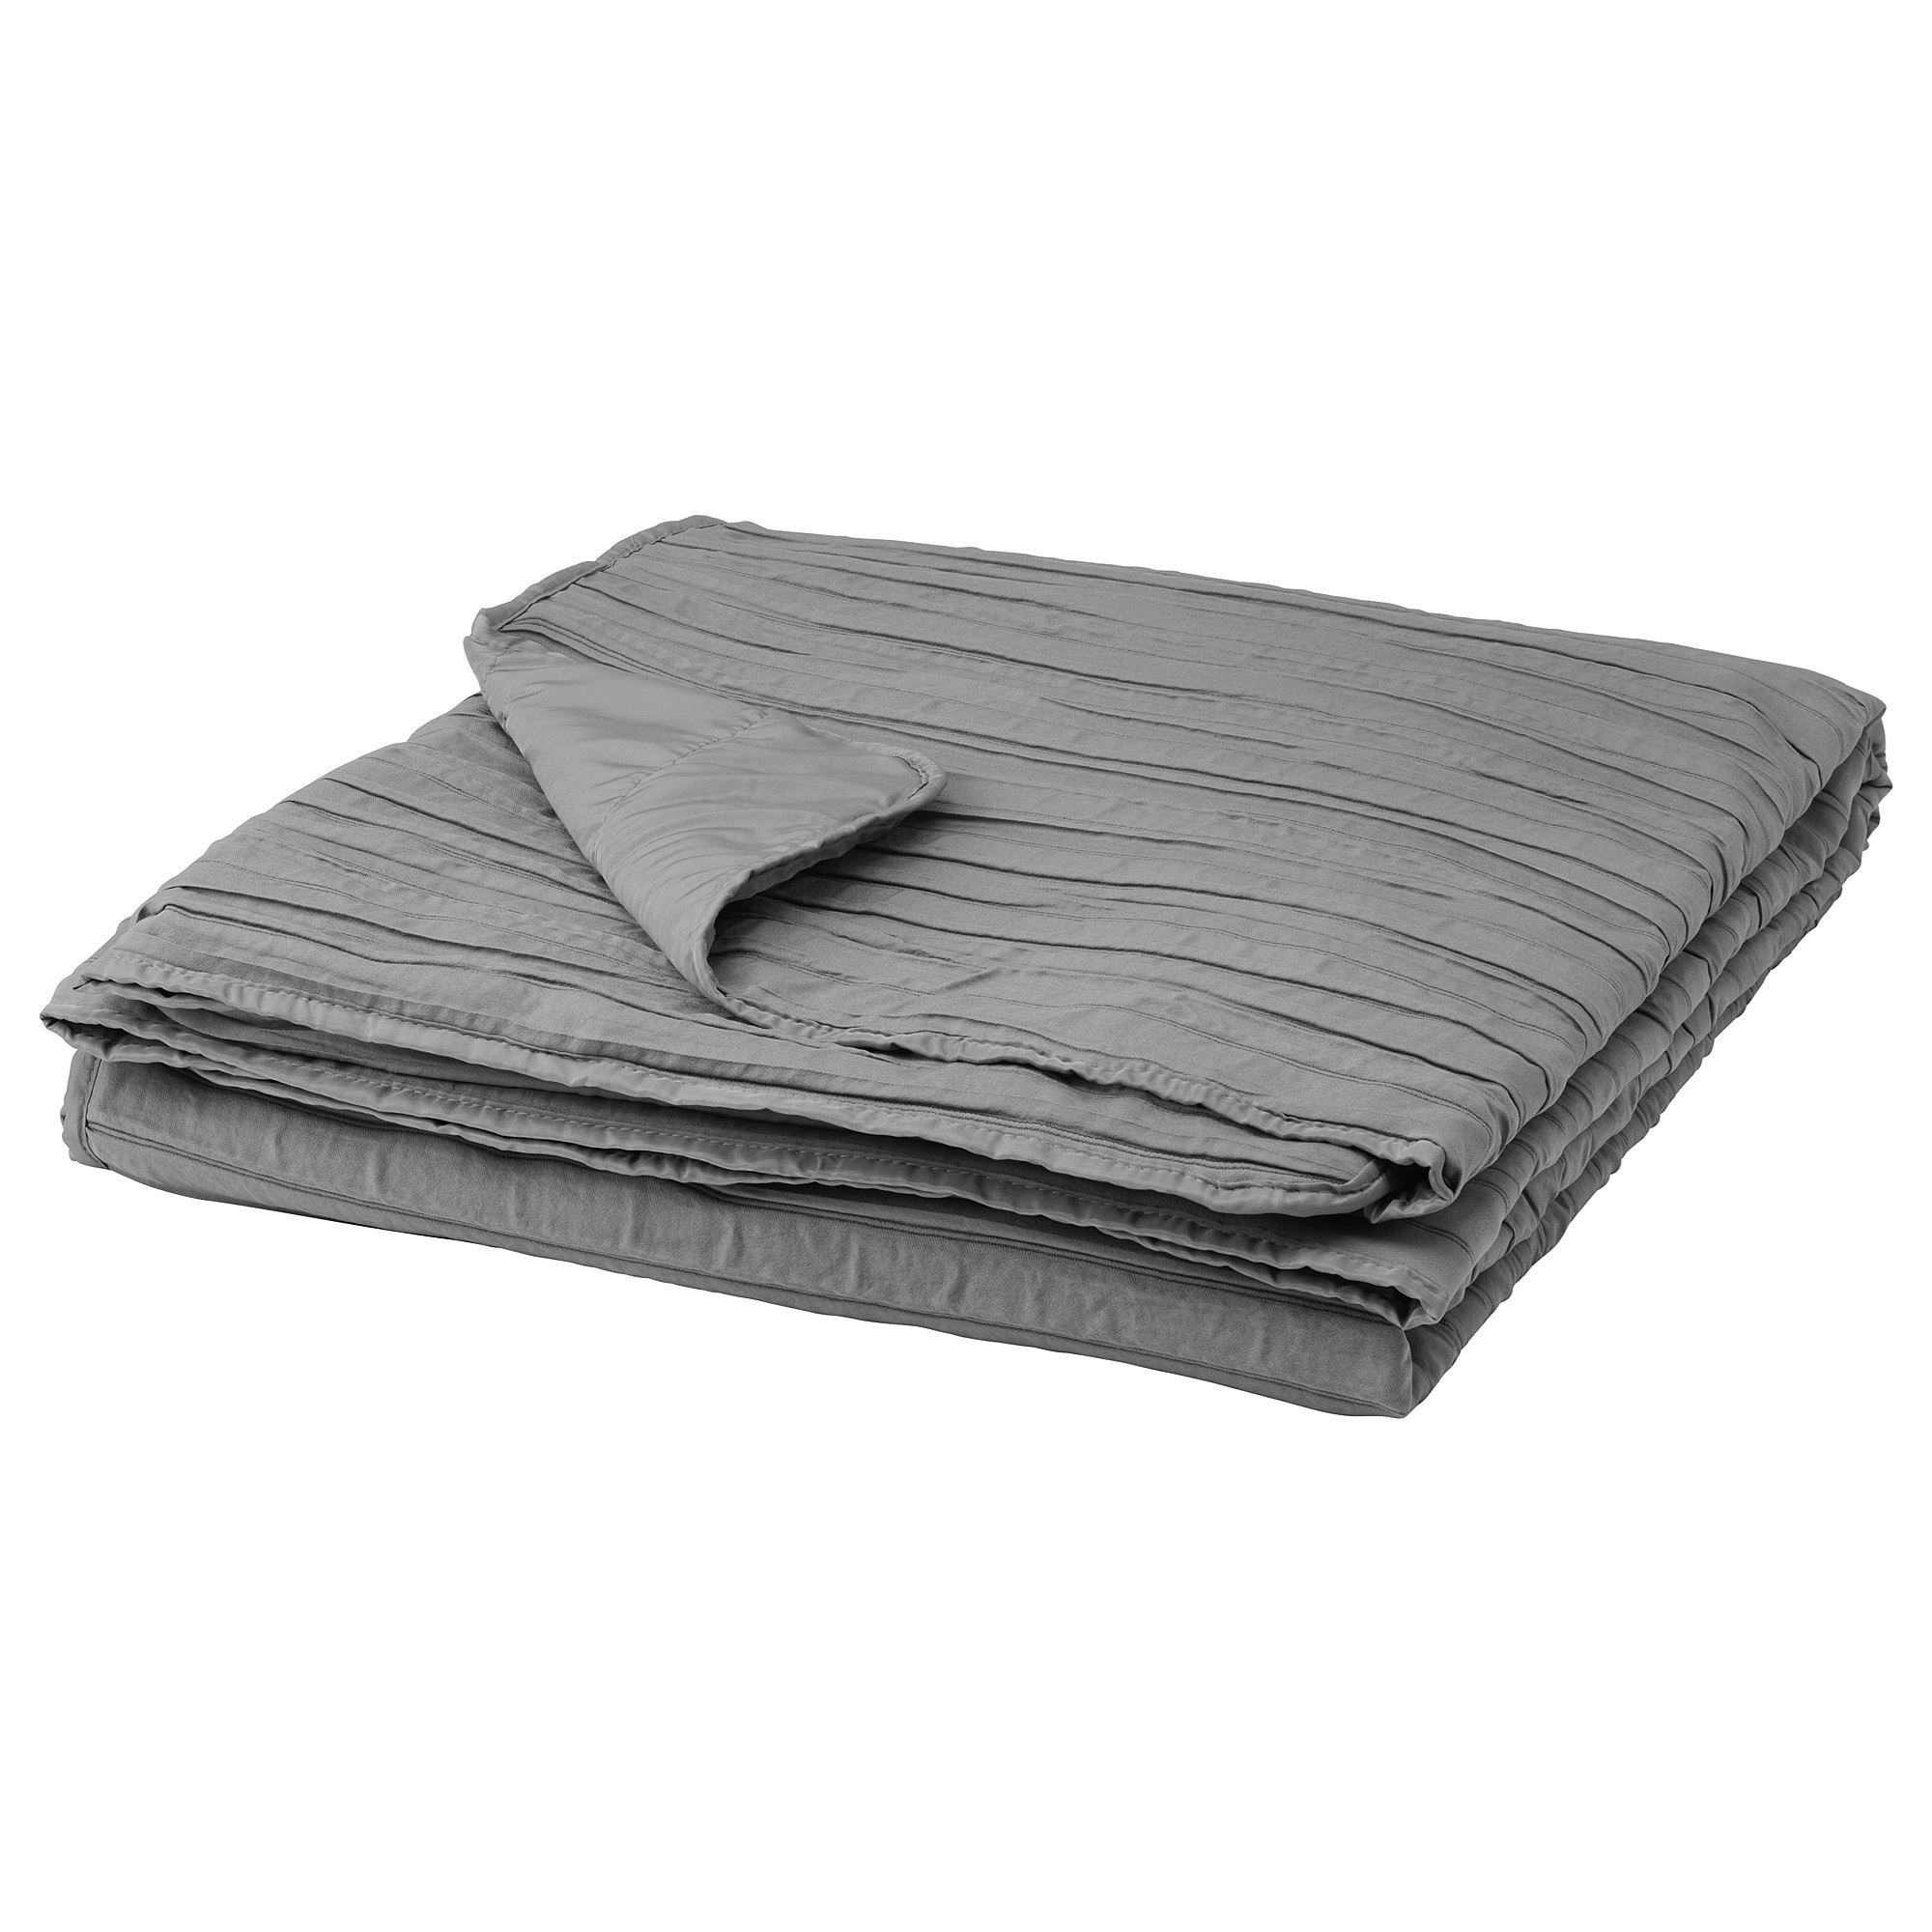 VEKETAG tek kişilik yatak örtüsü, gri, 160x250 cm